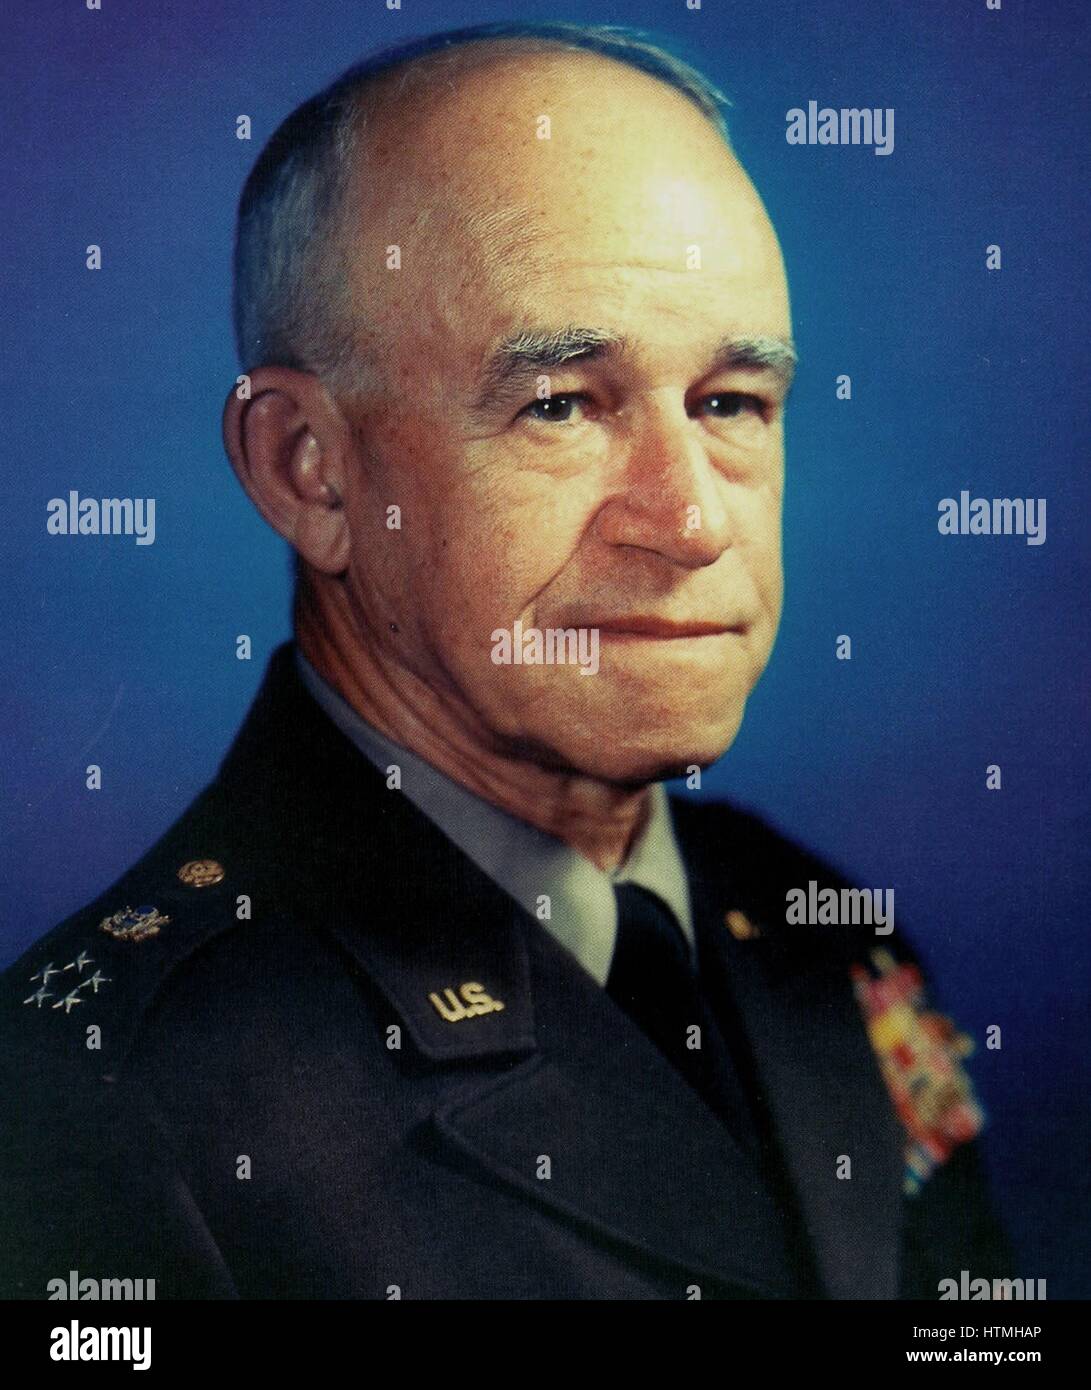 Général de l'armée américaine, Omar Nelson Bradley (12 février 1893 - 8 Avril, 1981) était l'un des principaux chefs militaires de l'armée américaine en Afrique du Nord et en Europe dans la seconde guerre mondiale Banque D'Images